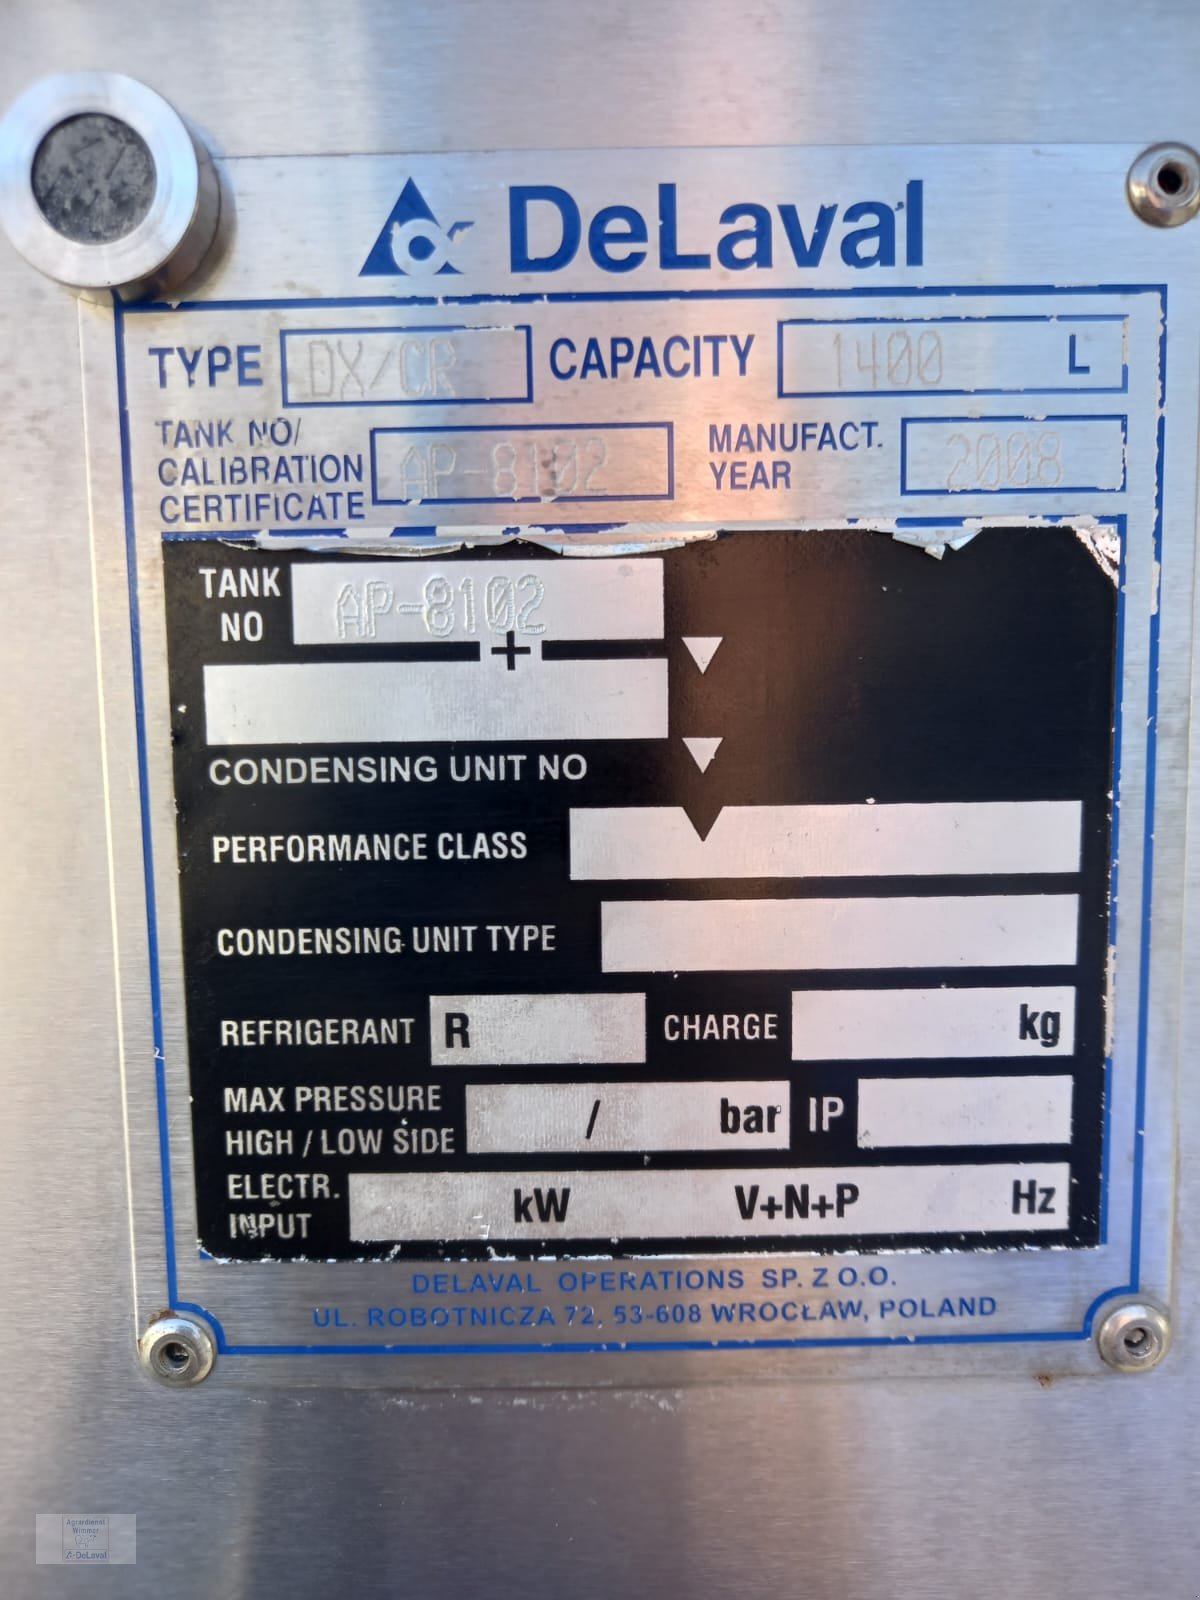 Milchkühltank des Typs DeLaval DXCR, Gebrauchtmaschine in Hutthurm (Bild 5)